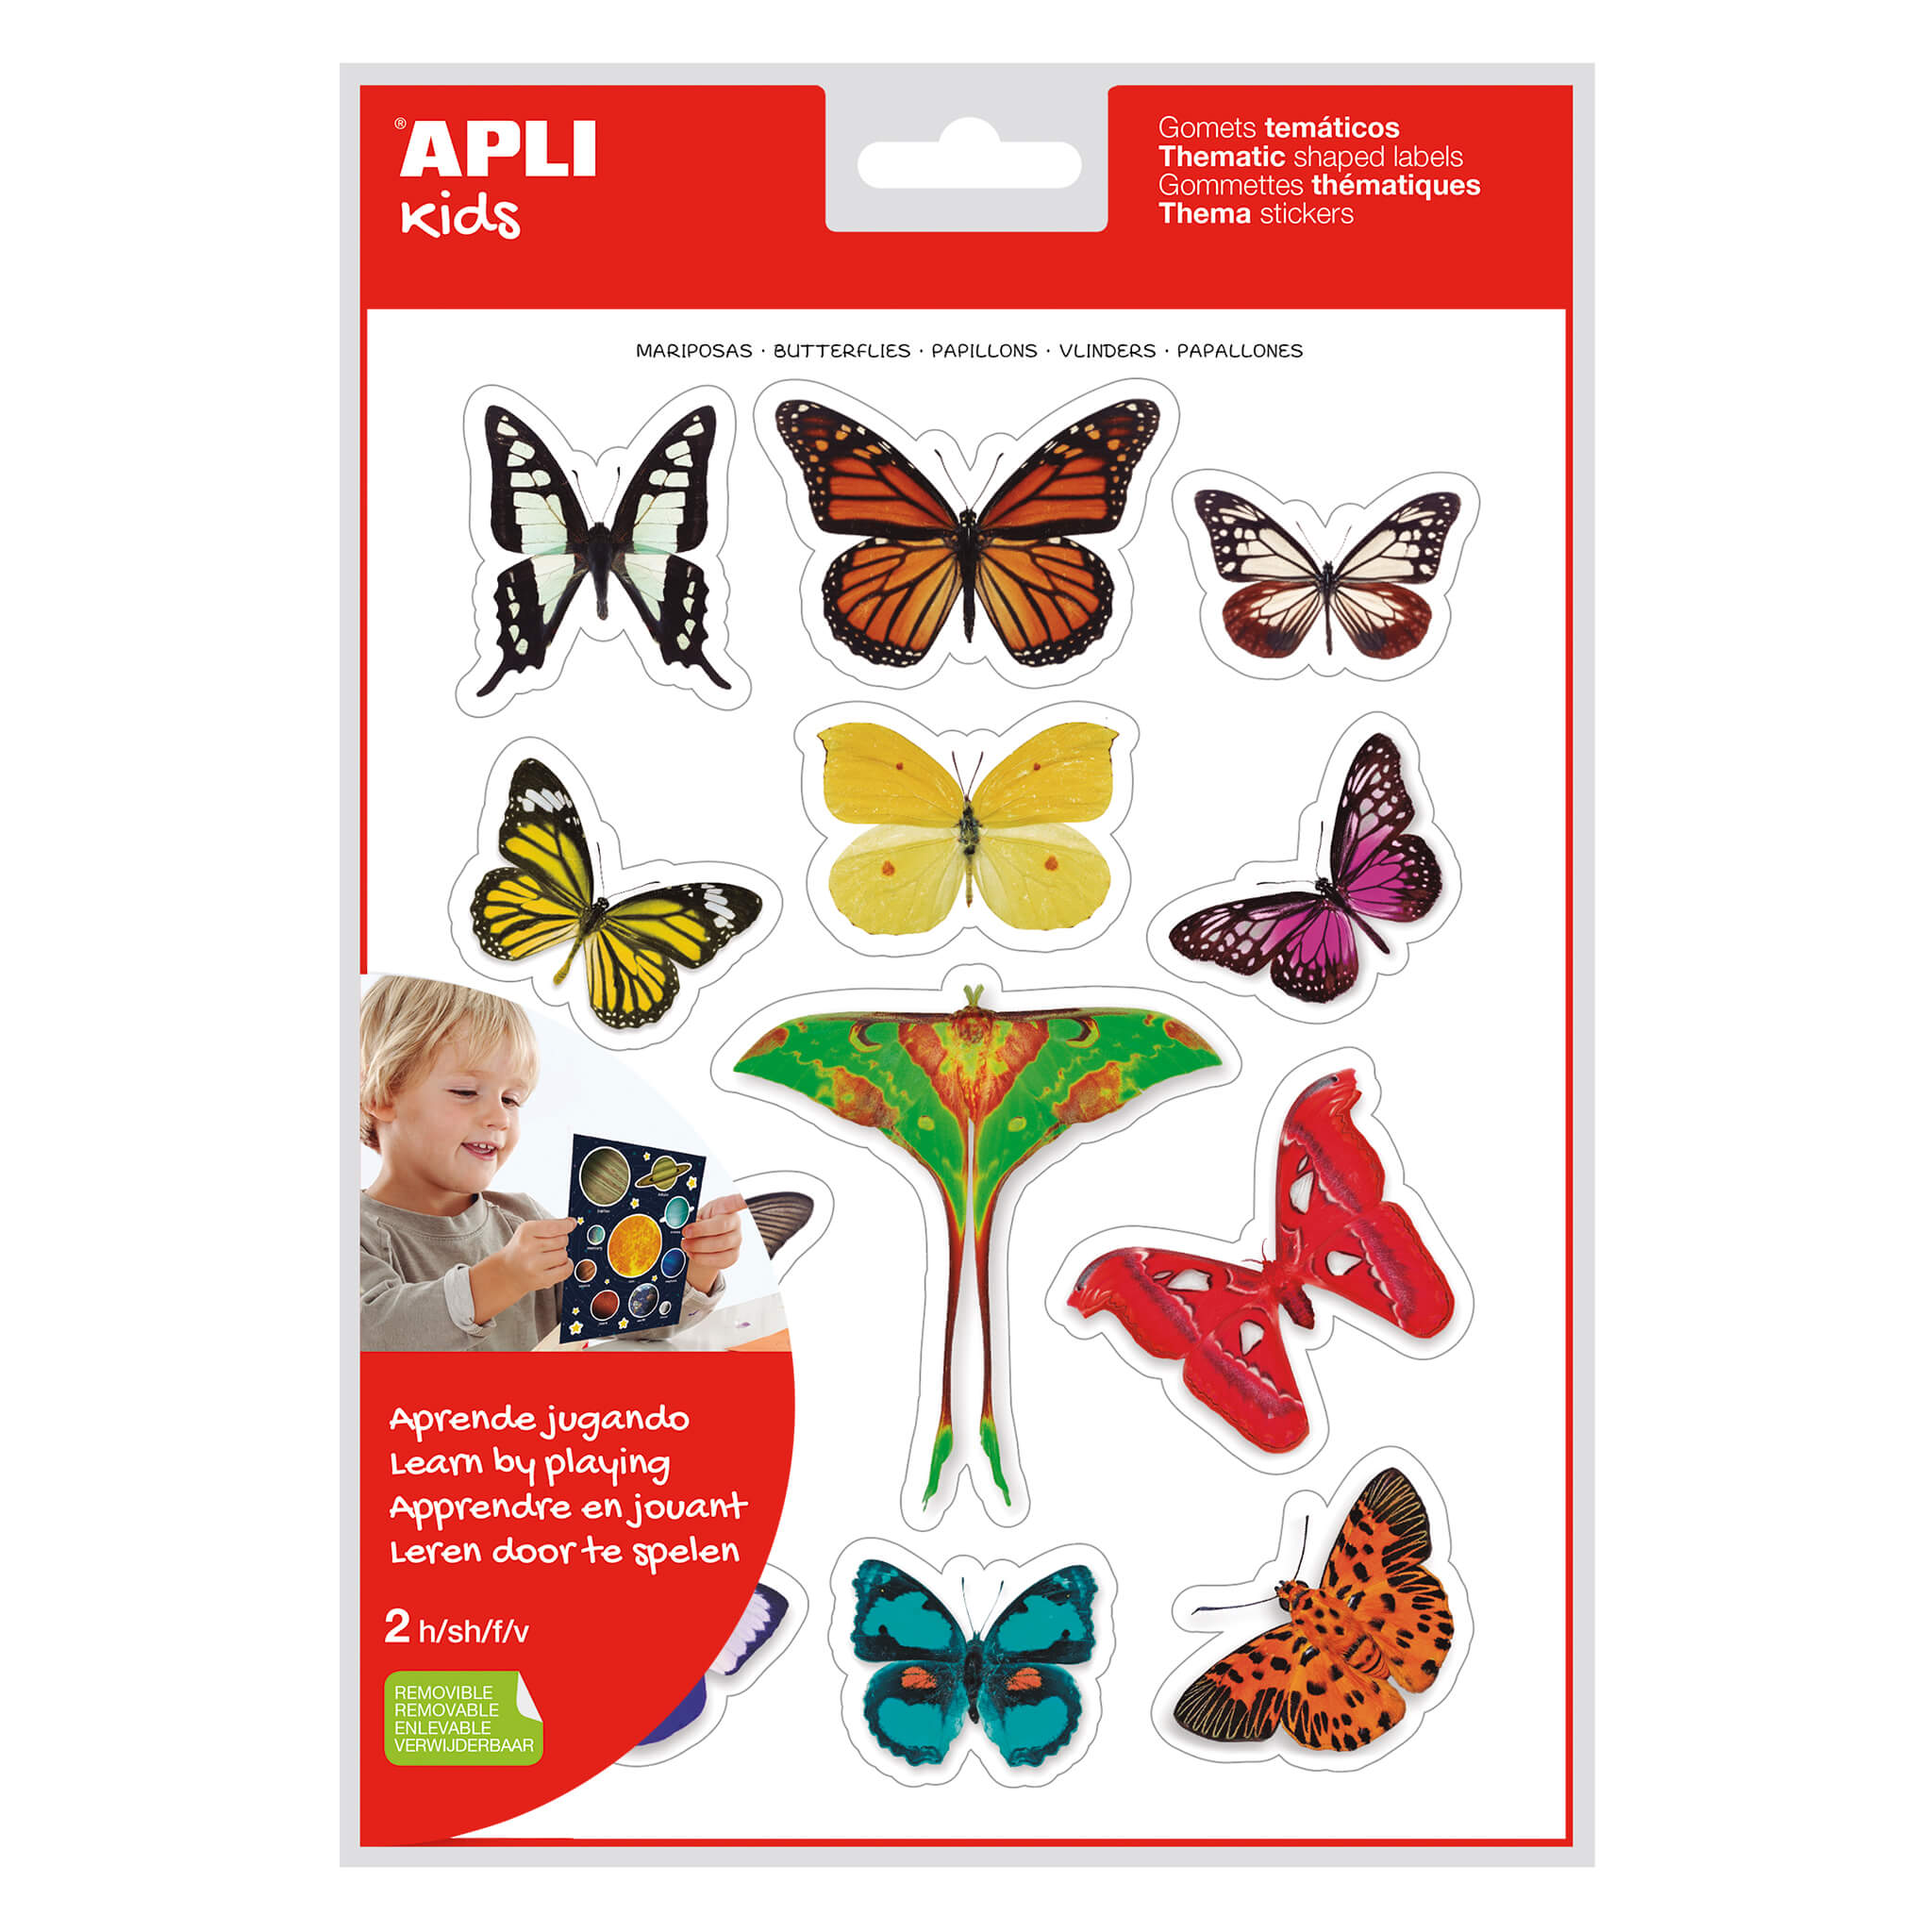 LOT de 5 Apli Gomets Papillons réalistes thématiques - 24 unités par sac - Adhésif amovible - Photographies en couleur - Adhésif à base d'eau - Sans solvant - Coloré